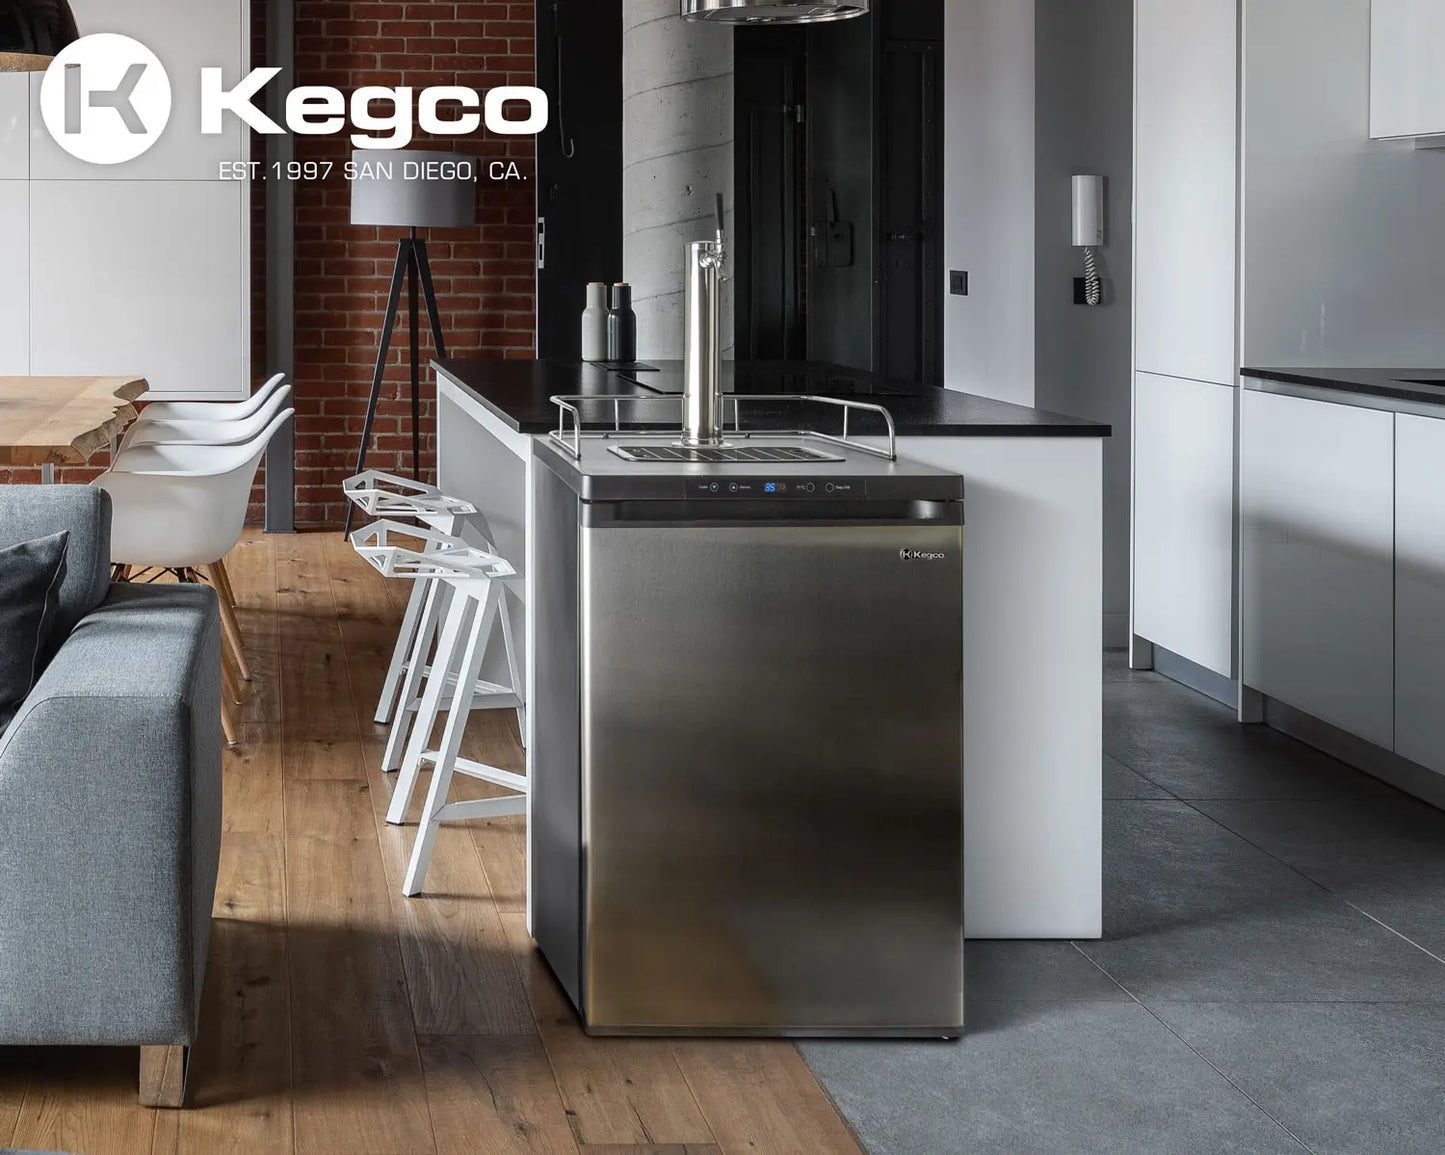 Kegco 24" Wide Single Tap Stainless Steel Kegerator - K209SS-1NK